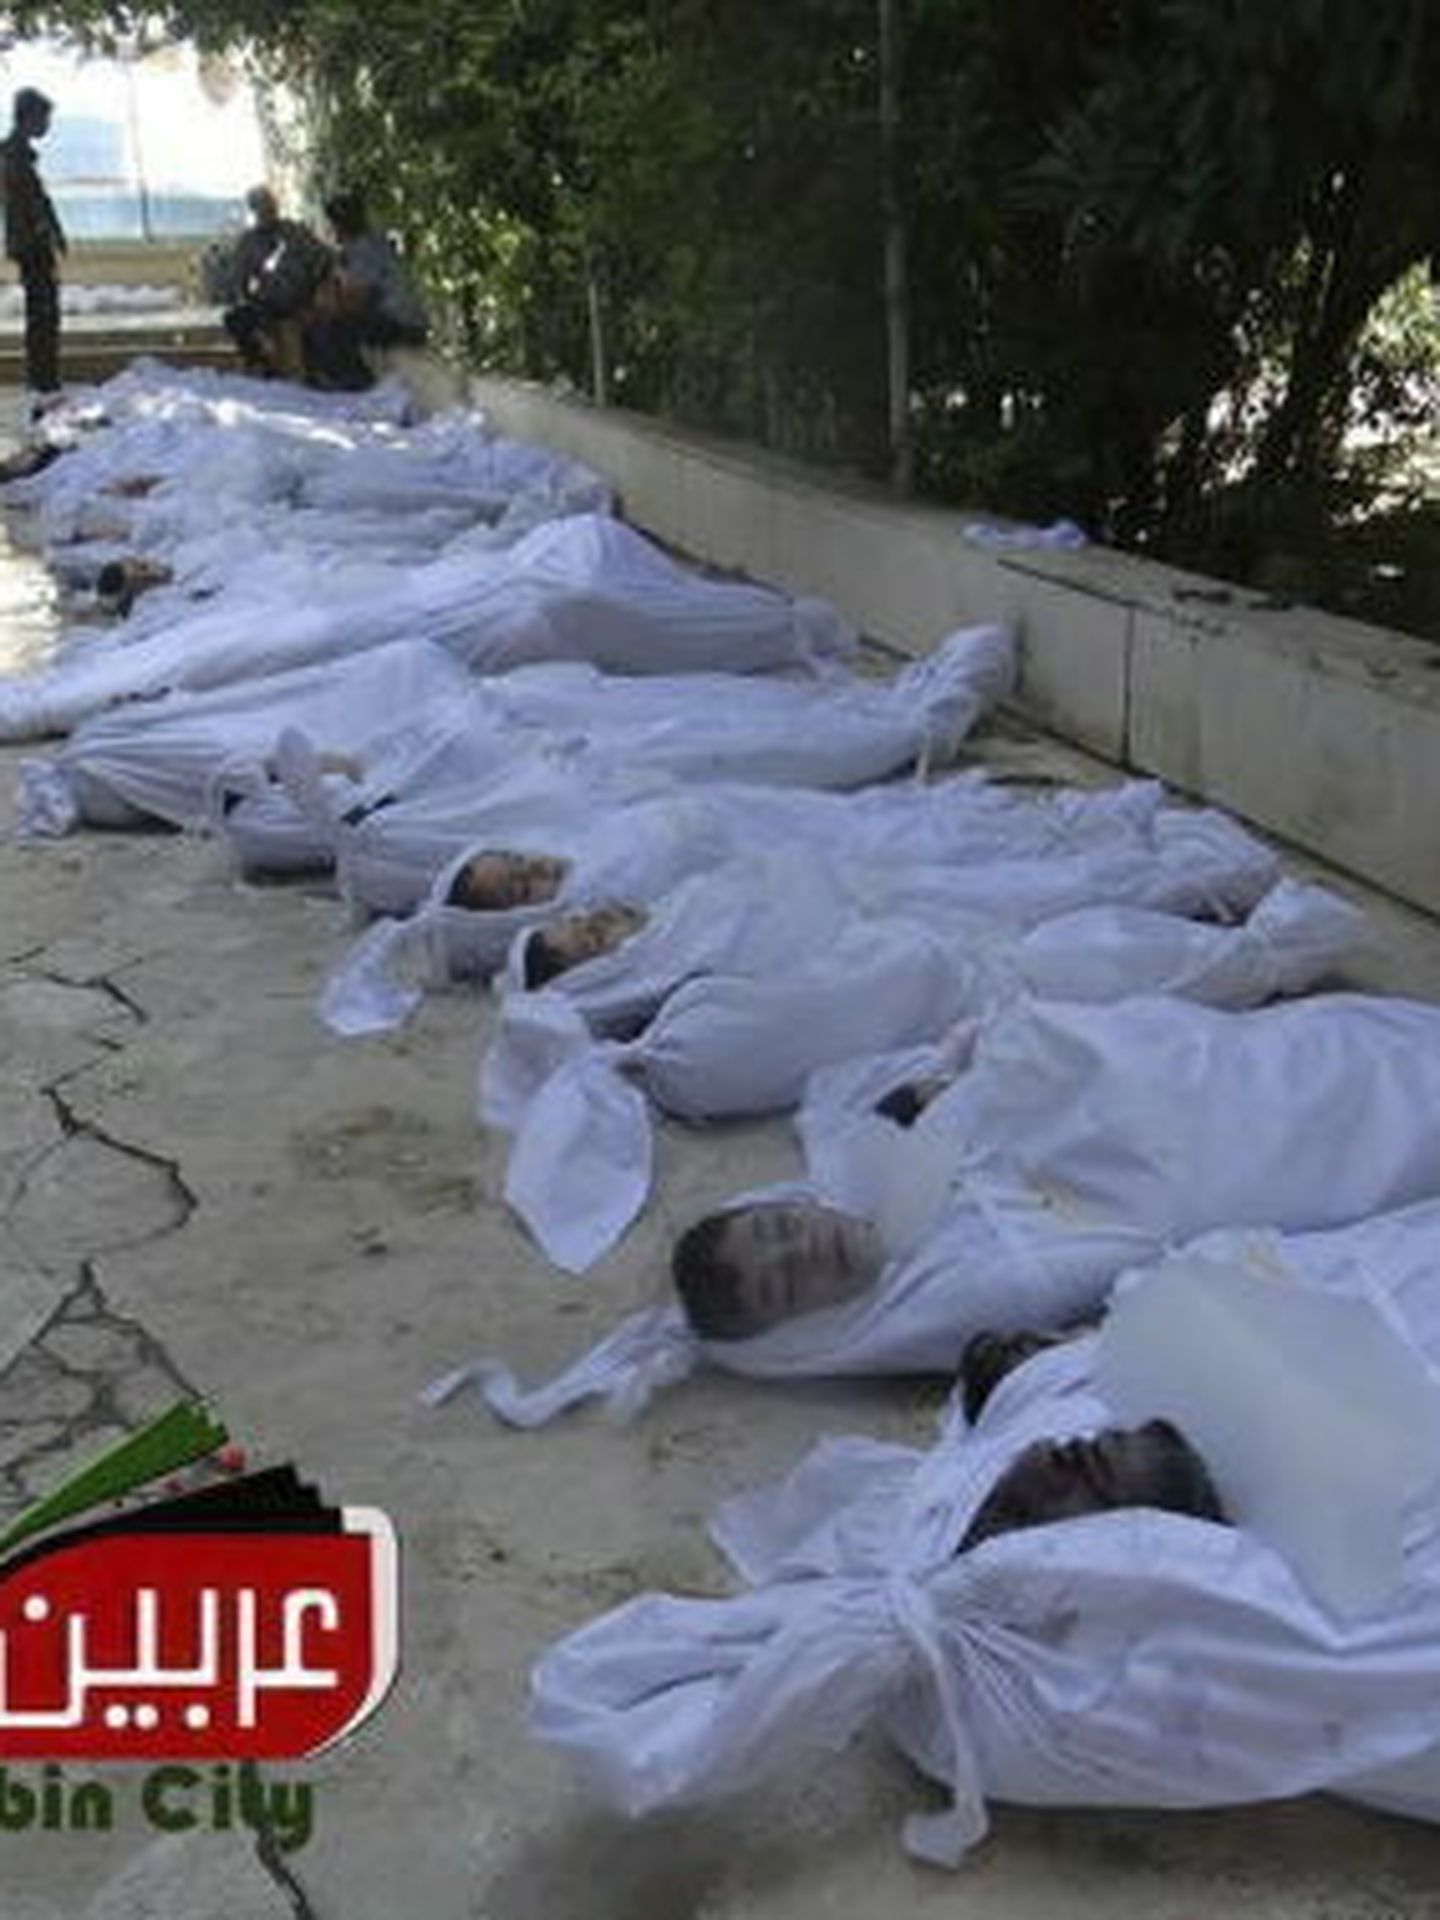 Fotografía facilitada por el comité local de arbeen que muestra los cuerpos sin vida de varios sirios tras un supuesto ataque con gases tóxicos. (efe)